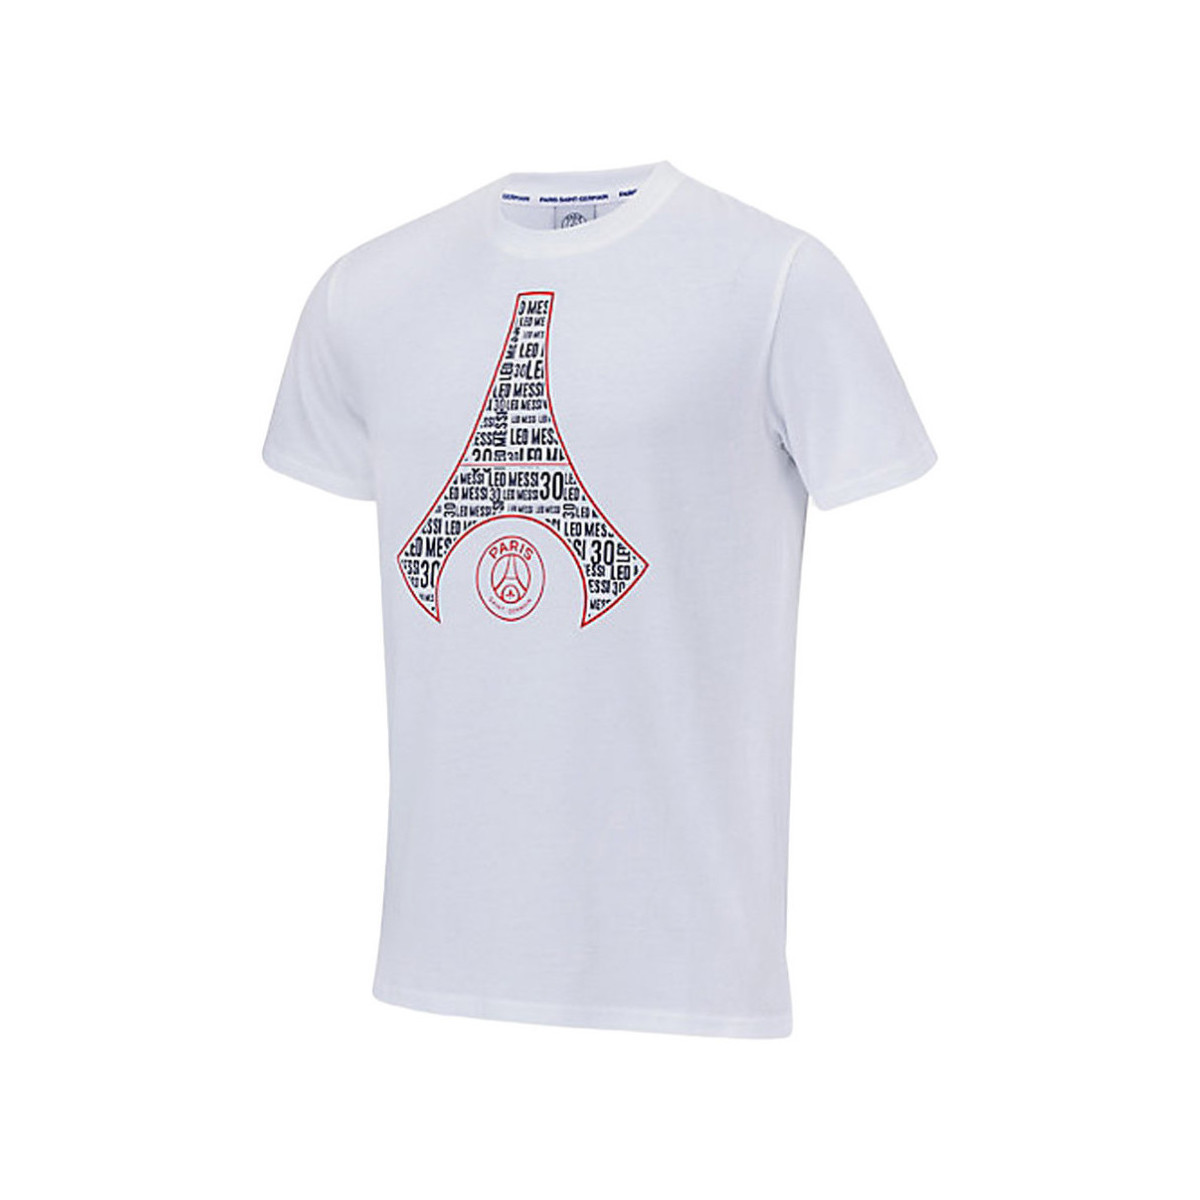 Vêtements Homme Débardeurs / T-shirts sans manche Paris Saint-germain P14408 Blanc